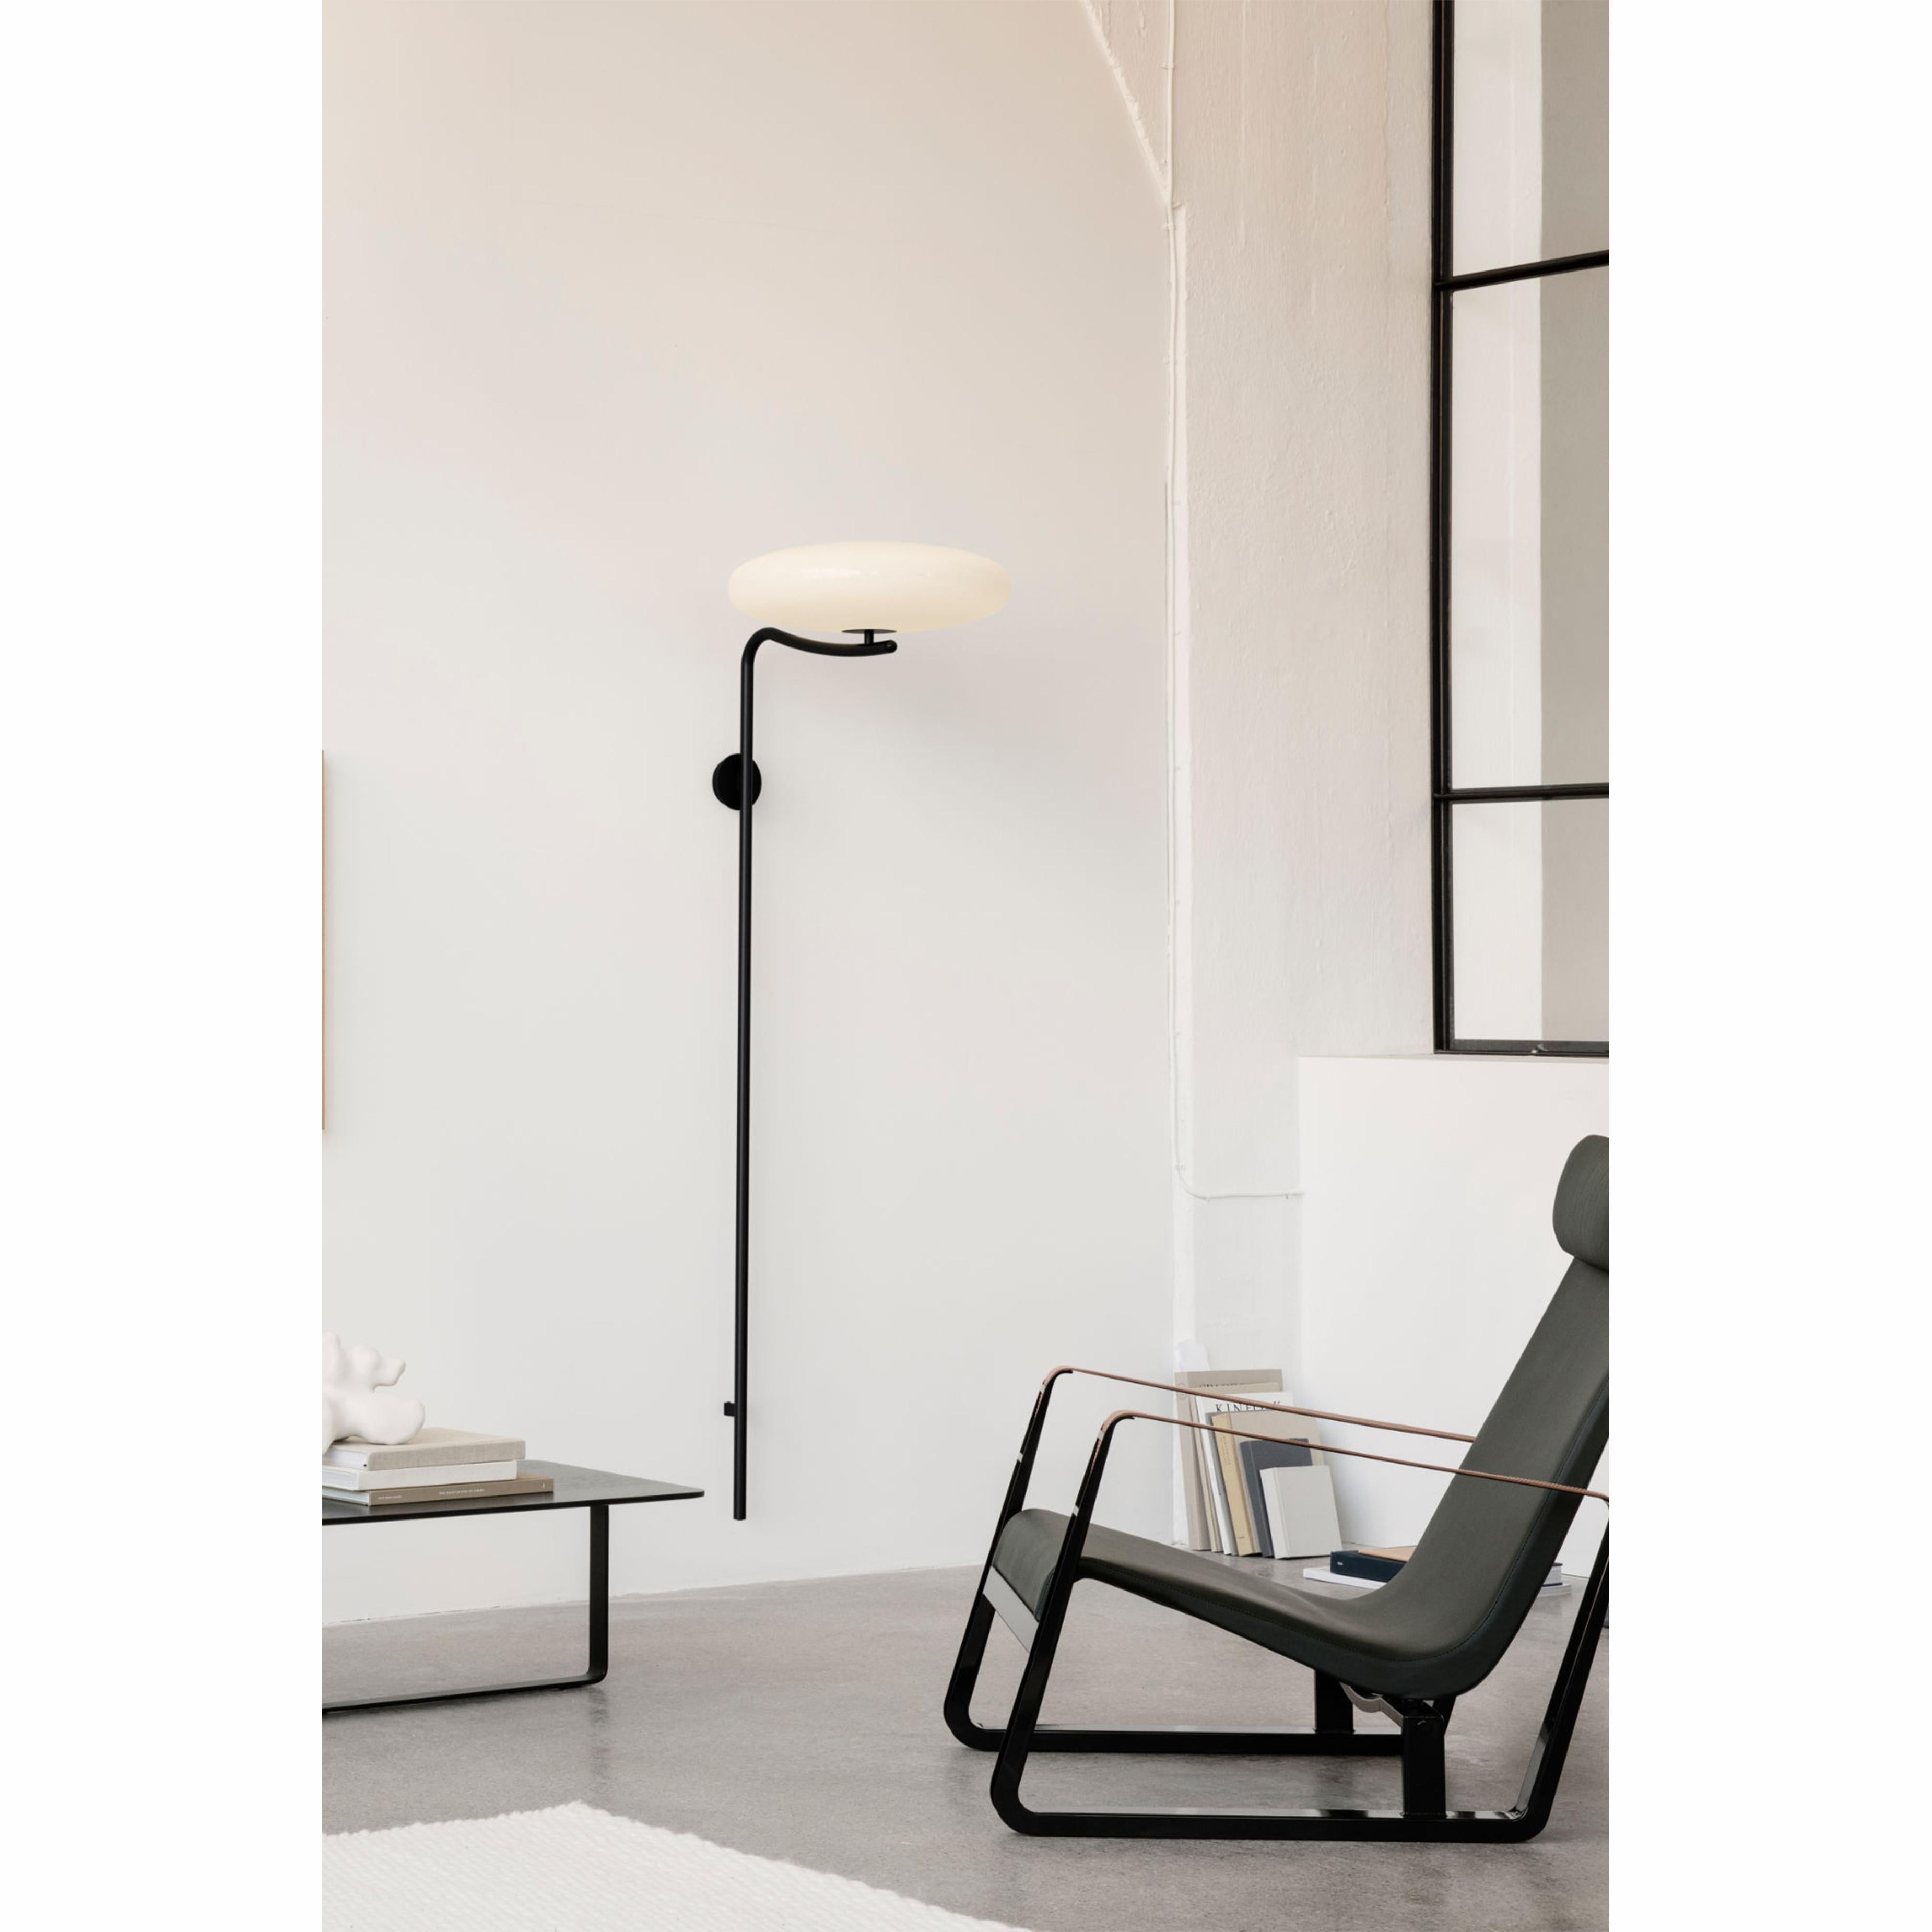 Gino Sarfatti Wall Lamp Model 2065 White Diffuser, Black Hardware For Sale 1